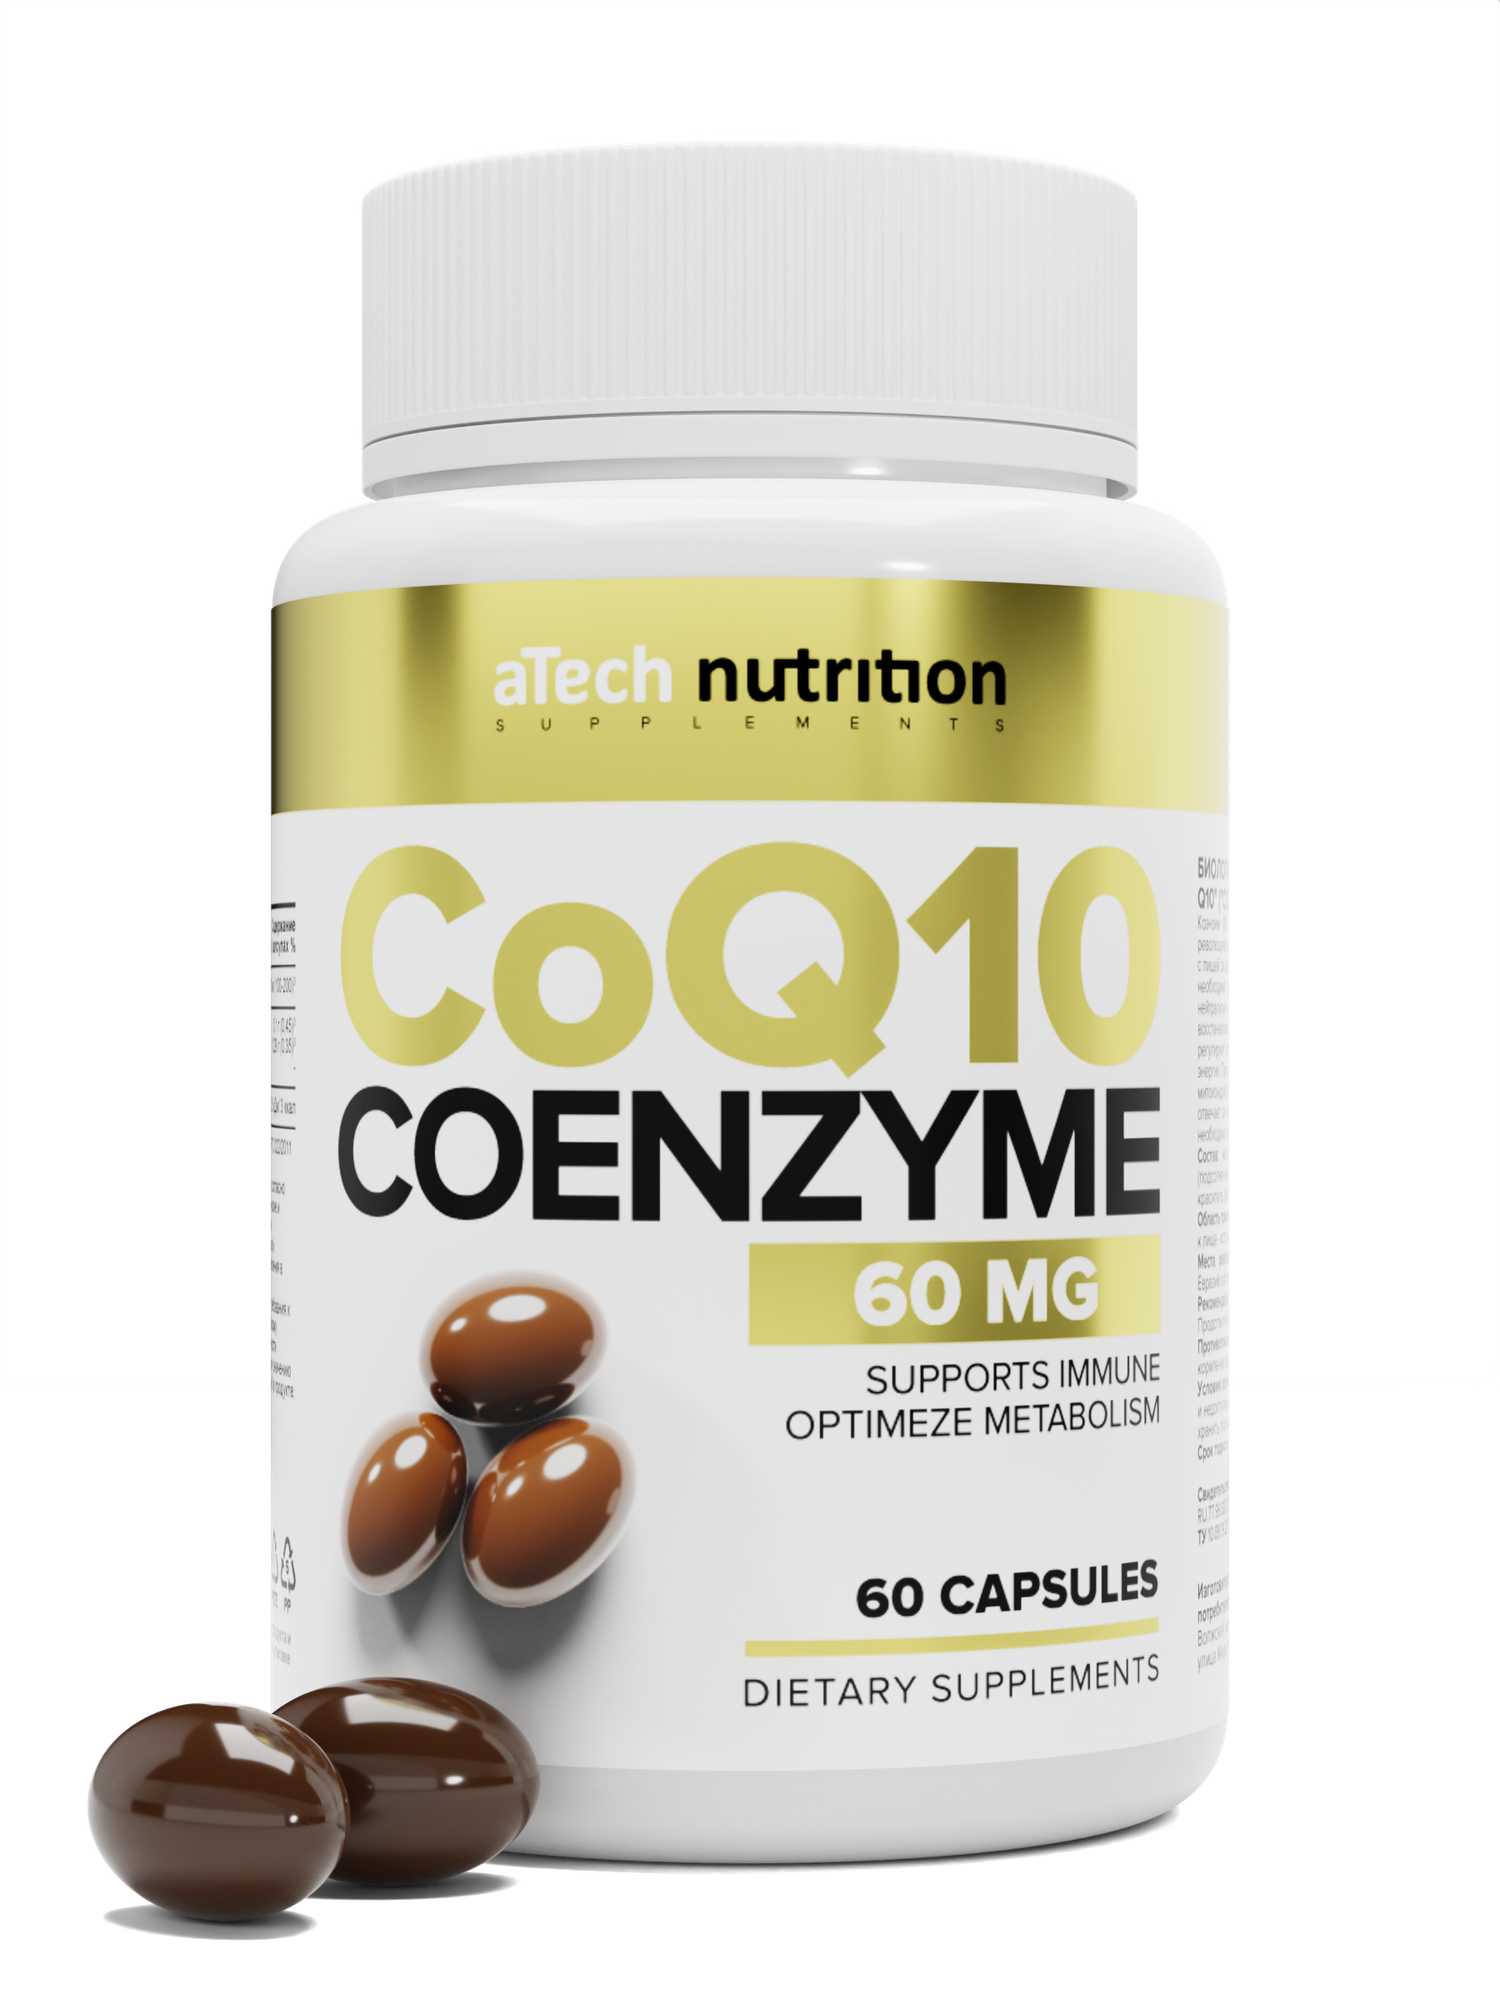 Набор 2 упаковки витаминов aTech nutrition Коллаген + Коэнзим Q10 в капсулах